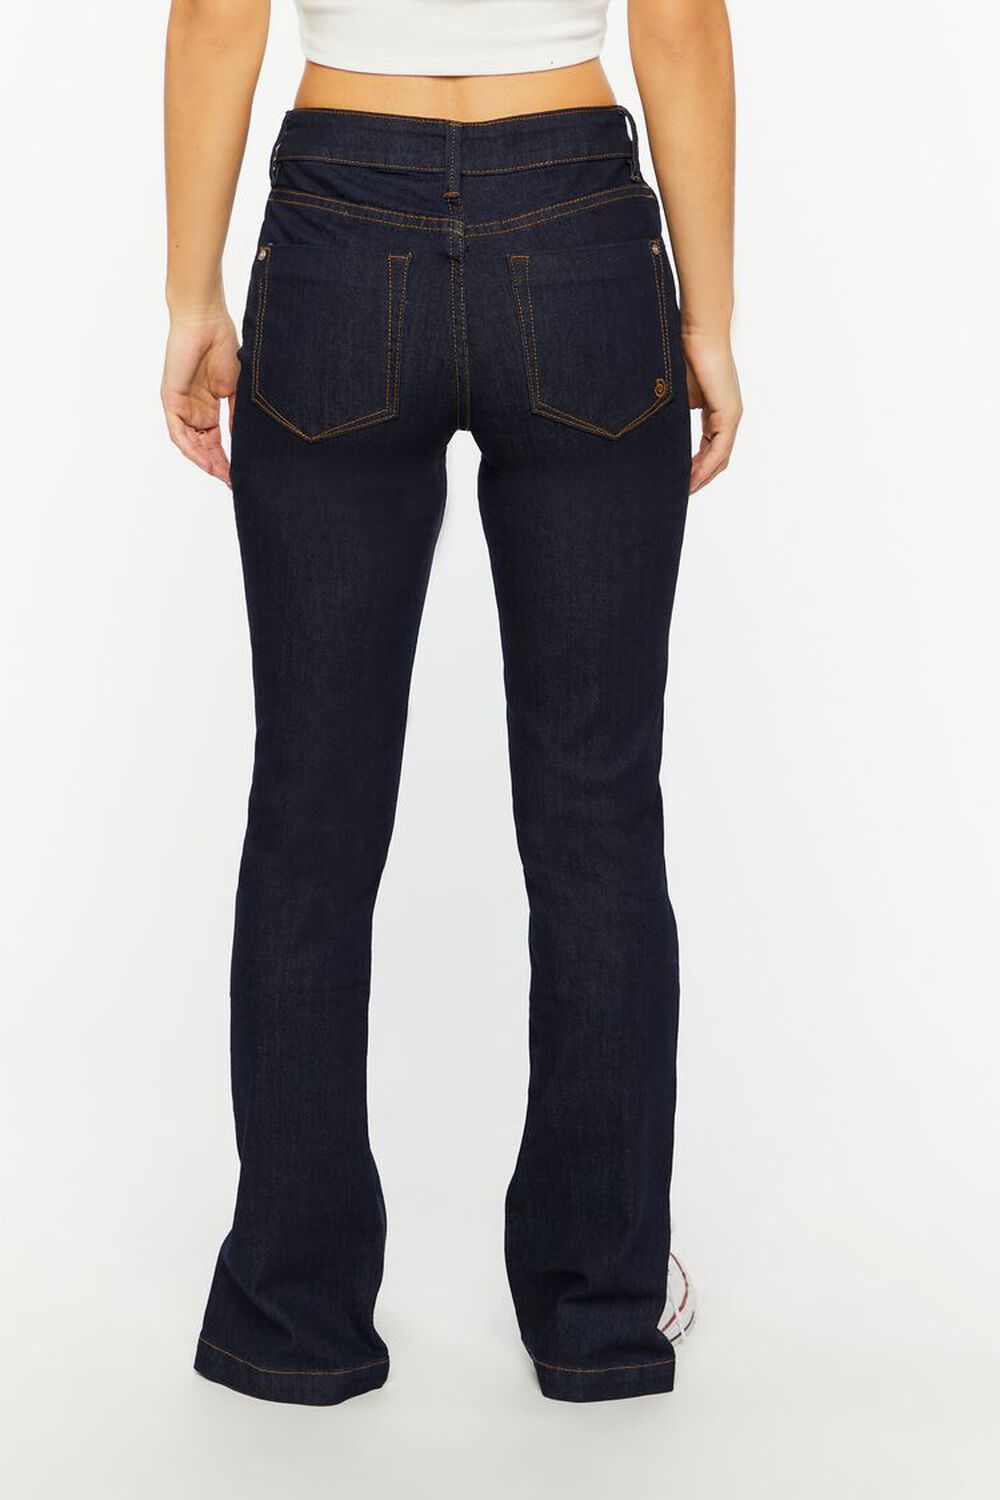 DARK DENIM Split-Hem Slim-Fit Jeans, image 3